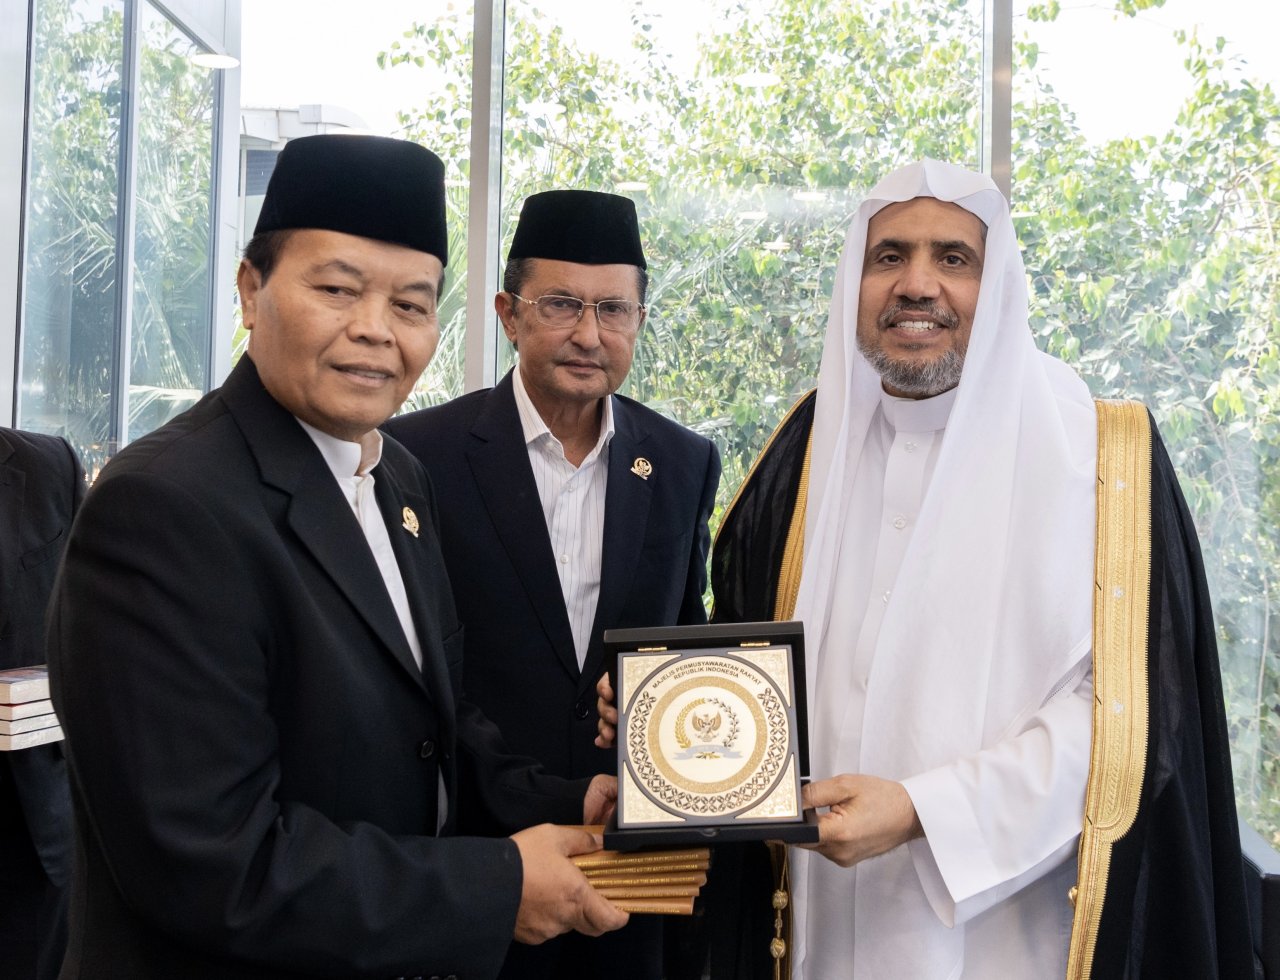 عزت مآب شیخ ڈاکٹر محمد العيسى نے ڈاکٹر ہدایت نور وحید کی سربراہی میں عوامی مشاورتی کونسل،انڈونیشیا کے ایک وفد کا استقبال کیا۔ ملاقات میں مشترکہ دلچسپی کے متعدد امور پر تبادلۂ خیال کیا گیا۔